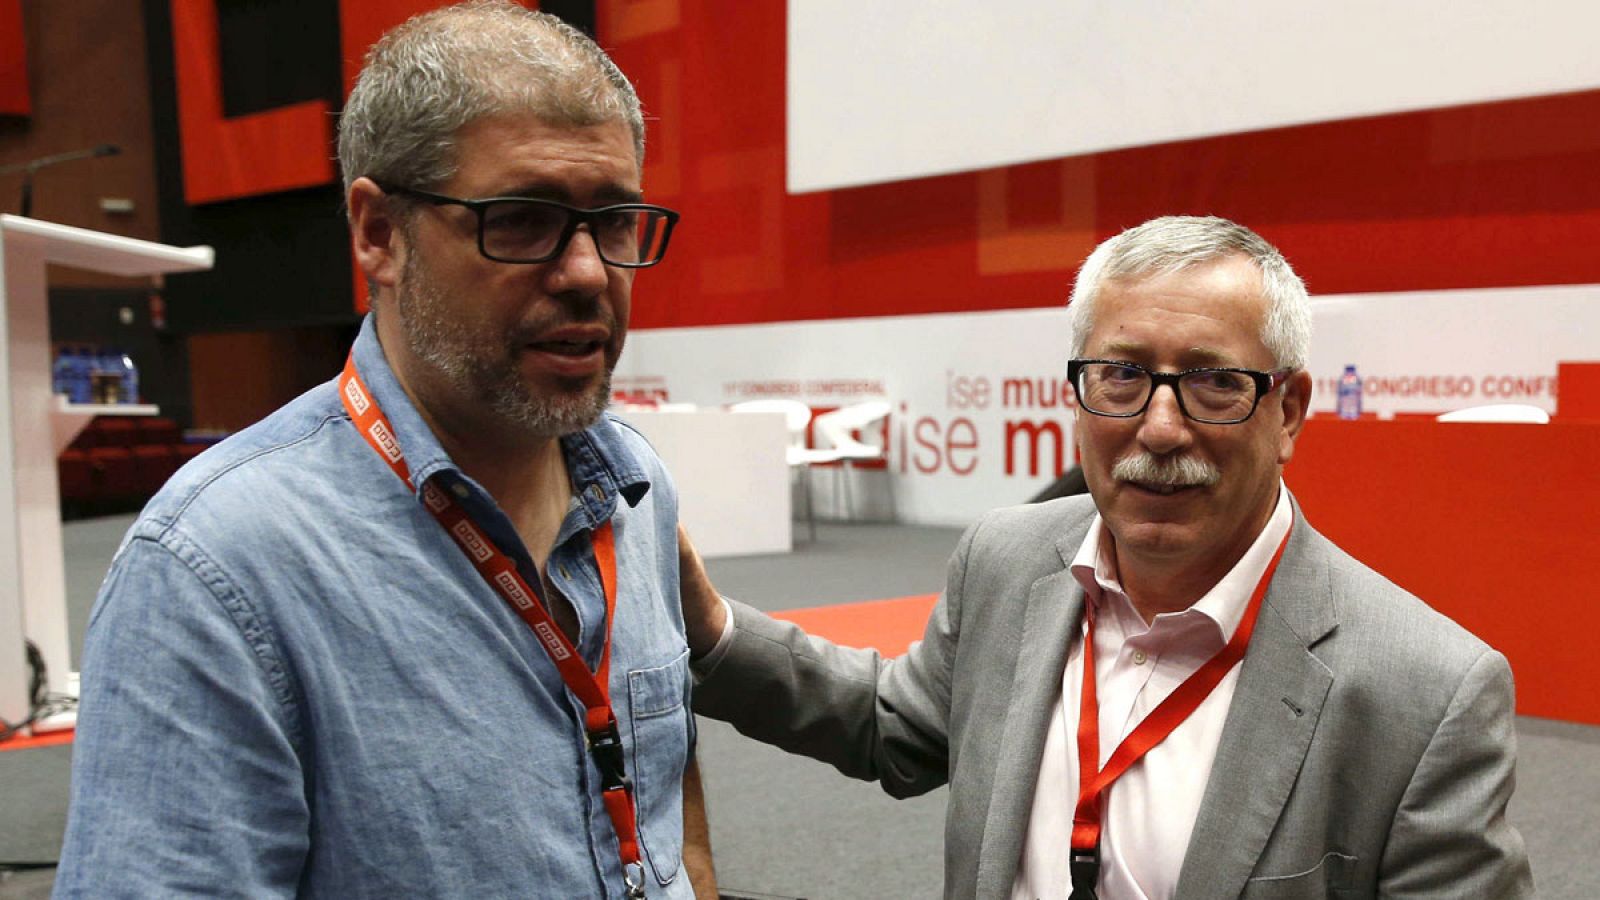 Unia Sordo (i) e Ignacio Fernández Toxo durante la votación de las candidaturas a la Secretaría General de CCOO en el XI Congreso Confederal del sindicato.